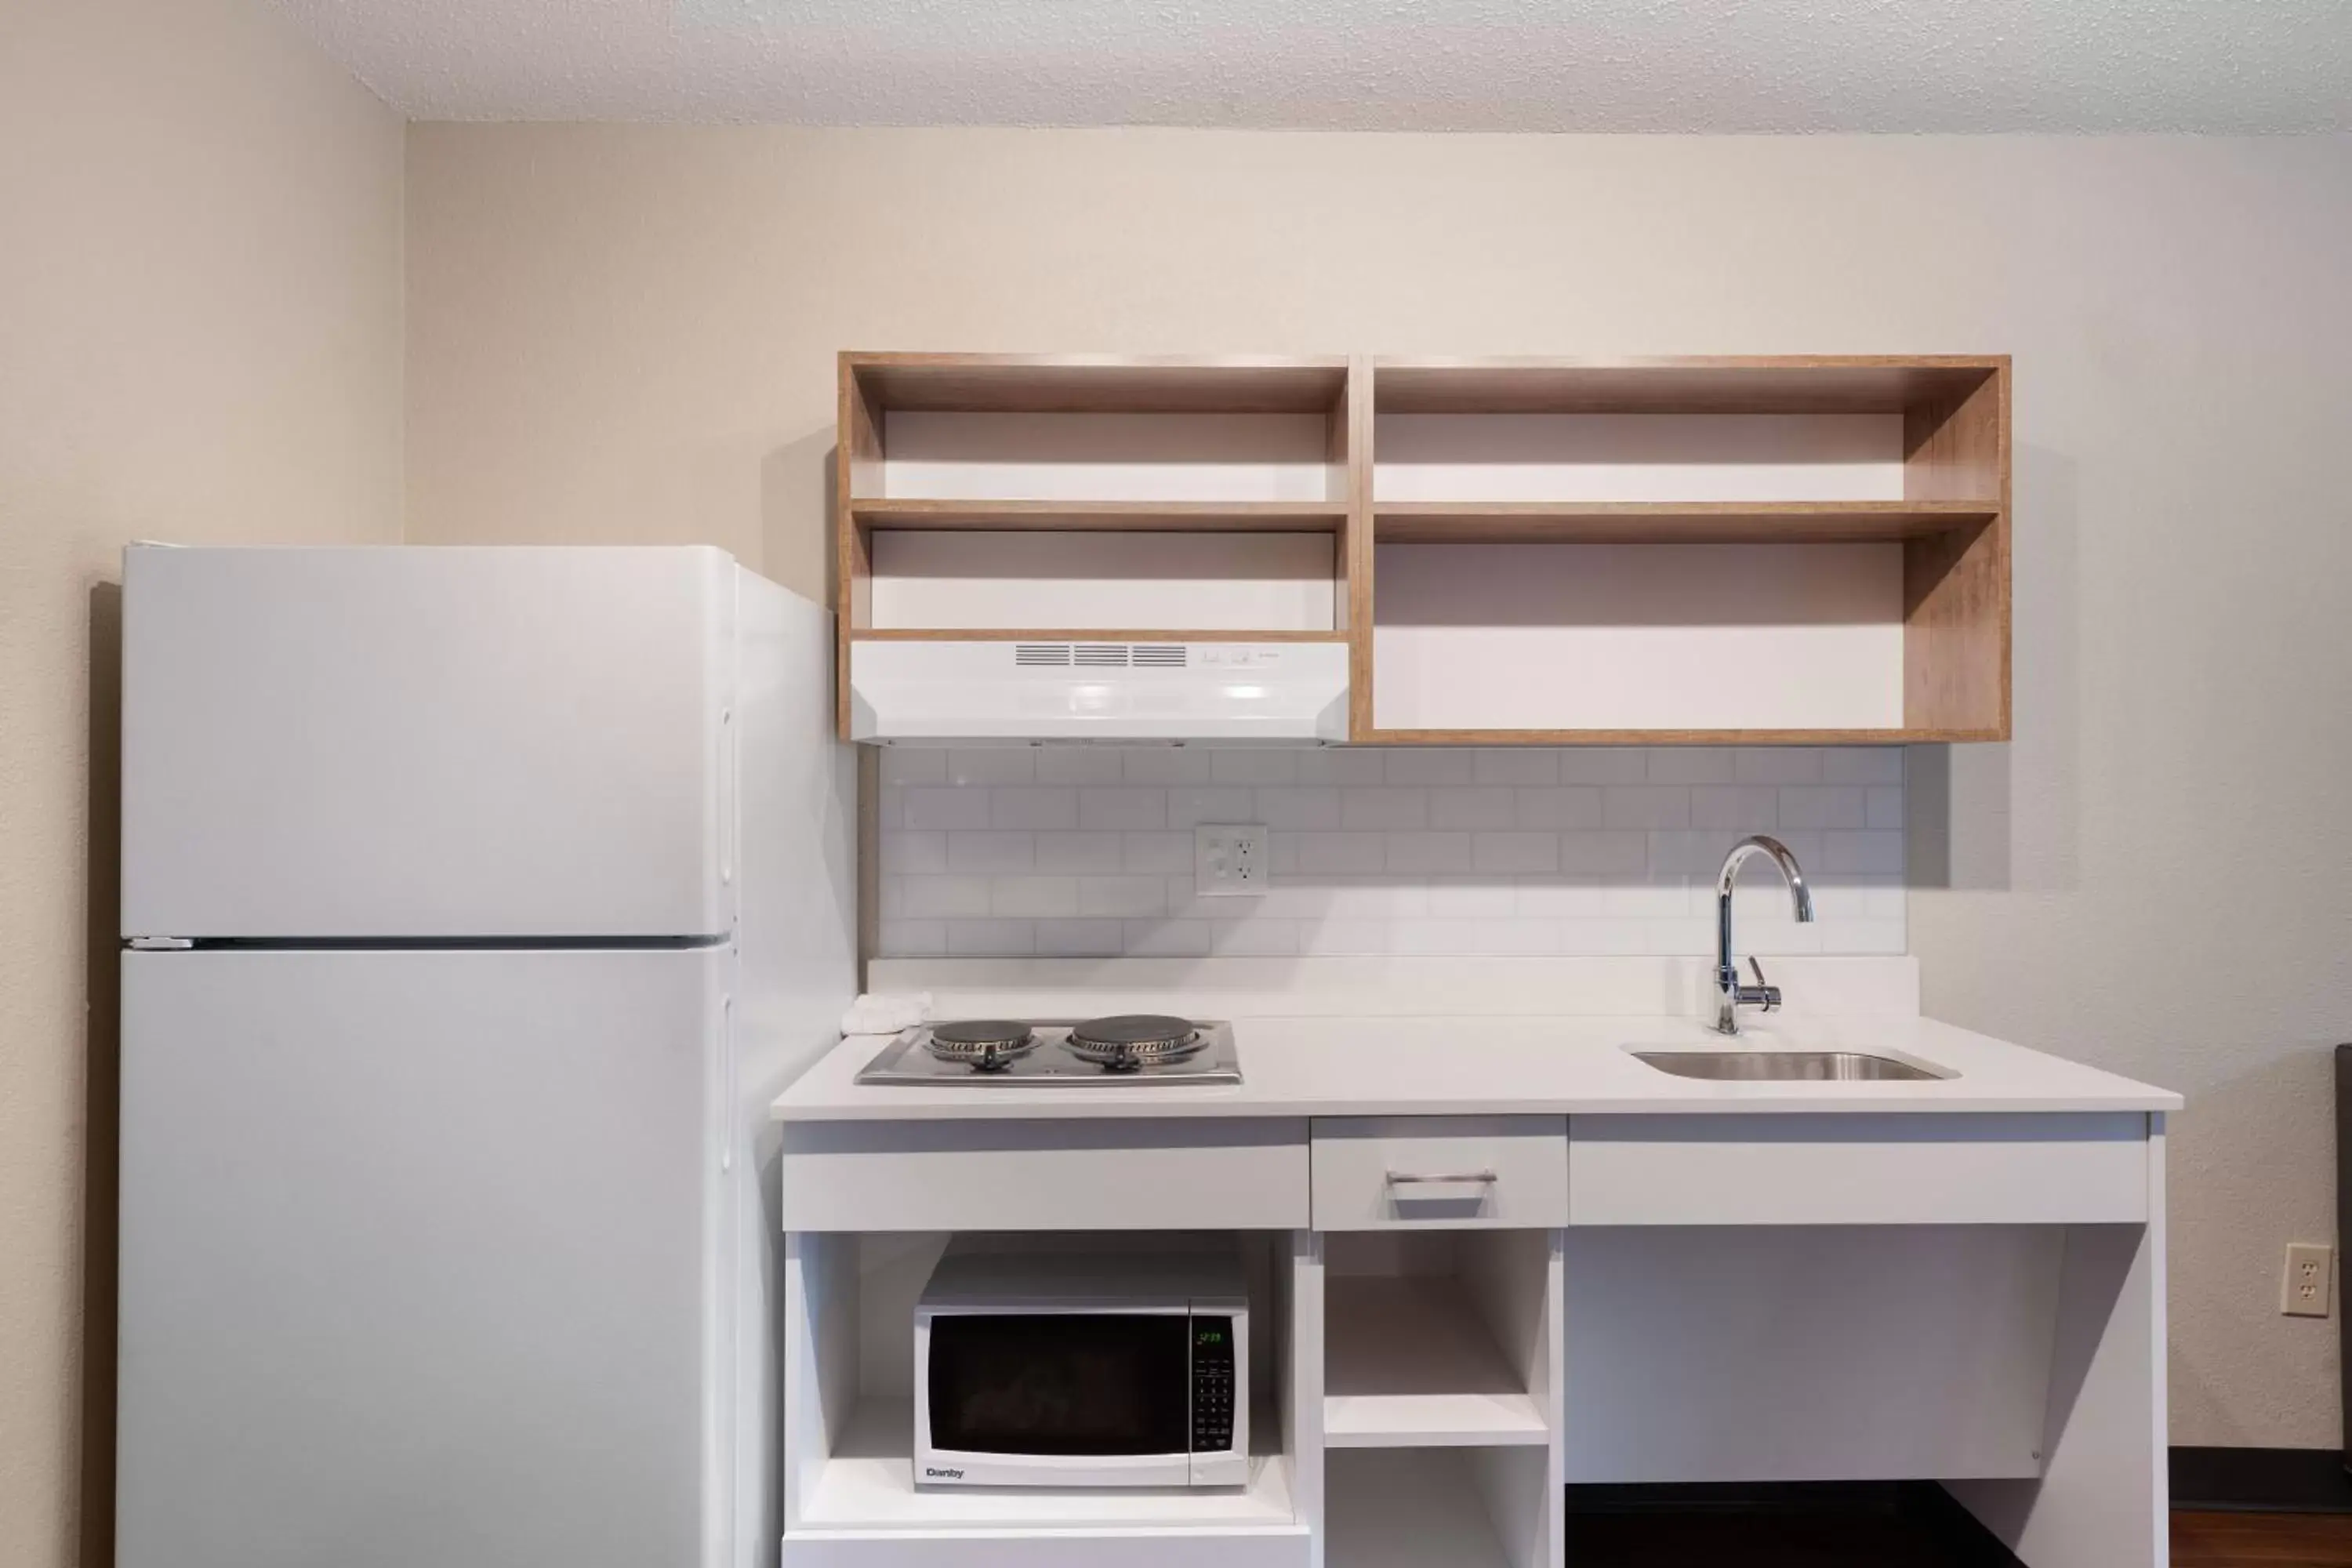 Kitchen or kitchenette, Kitchen/Kitchenette in Extended Stay America Premier Suites - Fort Lauderdale - Deerfield Beach